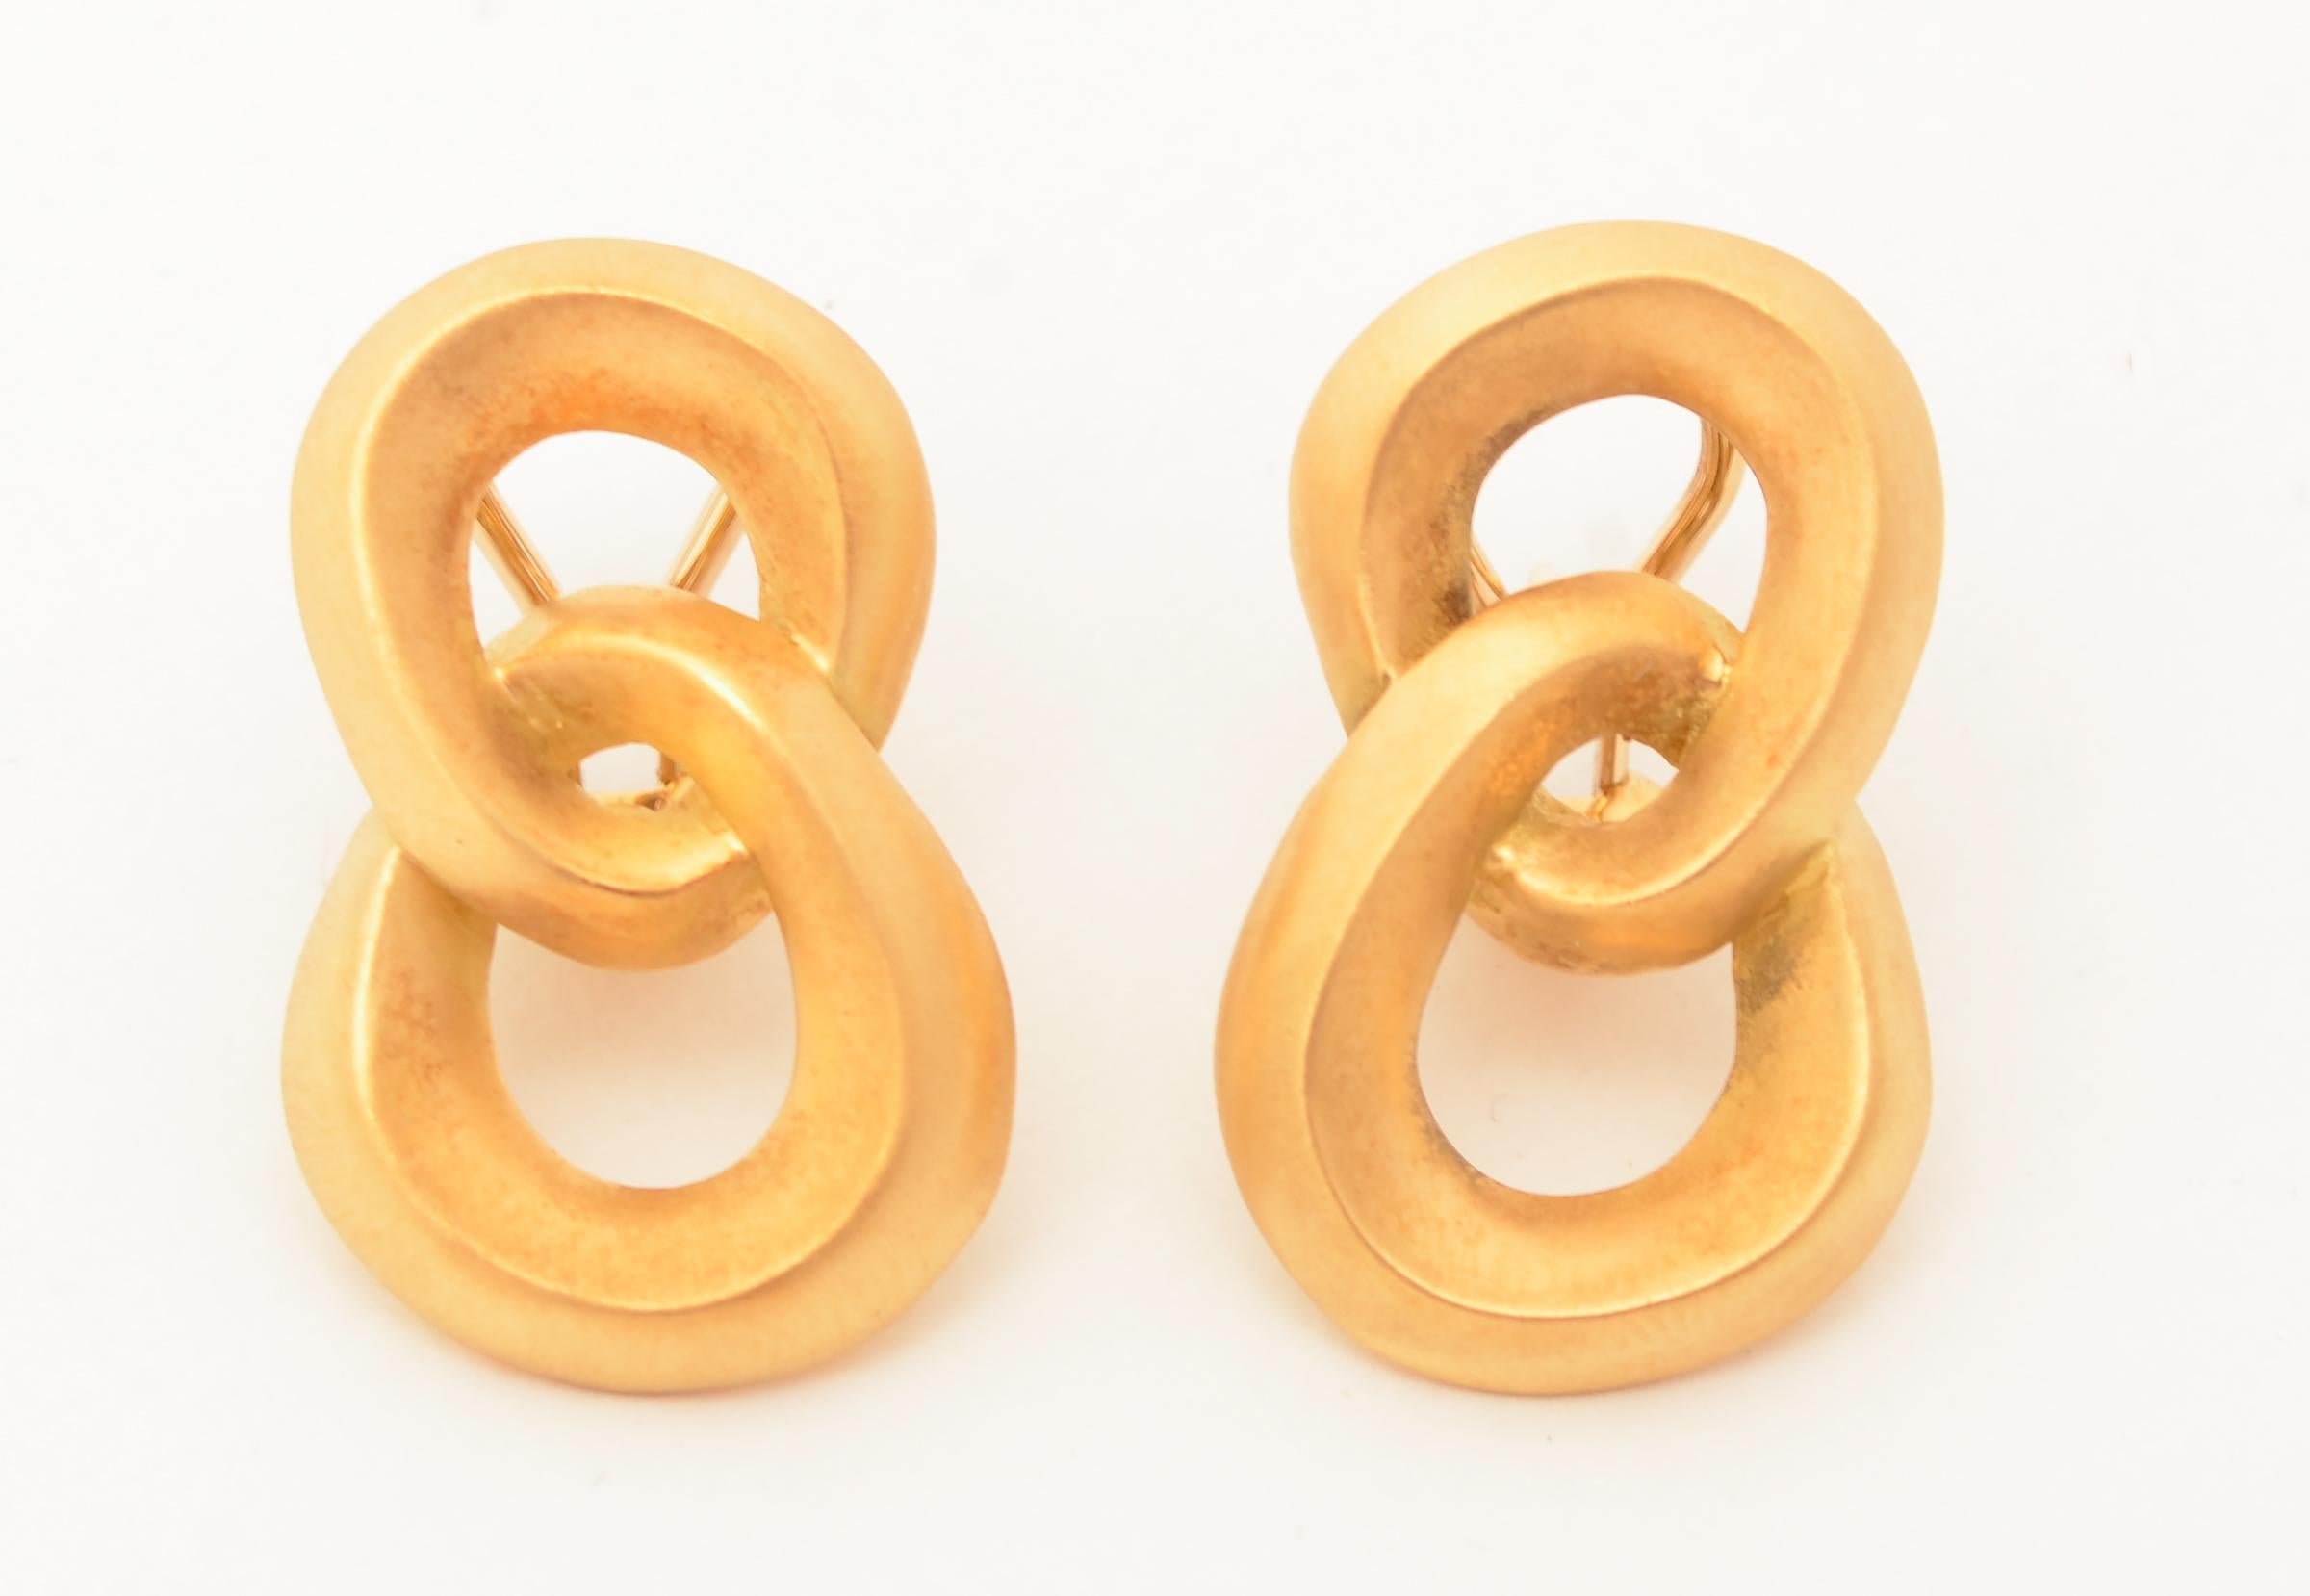 Doppelte Looping-Ohrringe von Angela Cummings aus 18-karätigem Gold mit mattem Finish. Die unregelmäßig geformten, ineinander verschlungenen Reifen sind leicht unterschiedlich groß, wobei der untere ein wenig größer ist als der